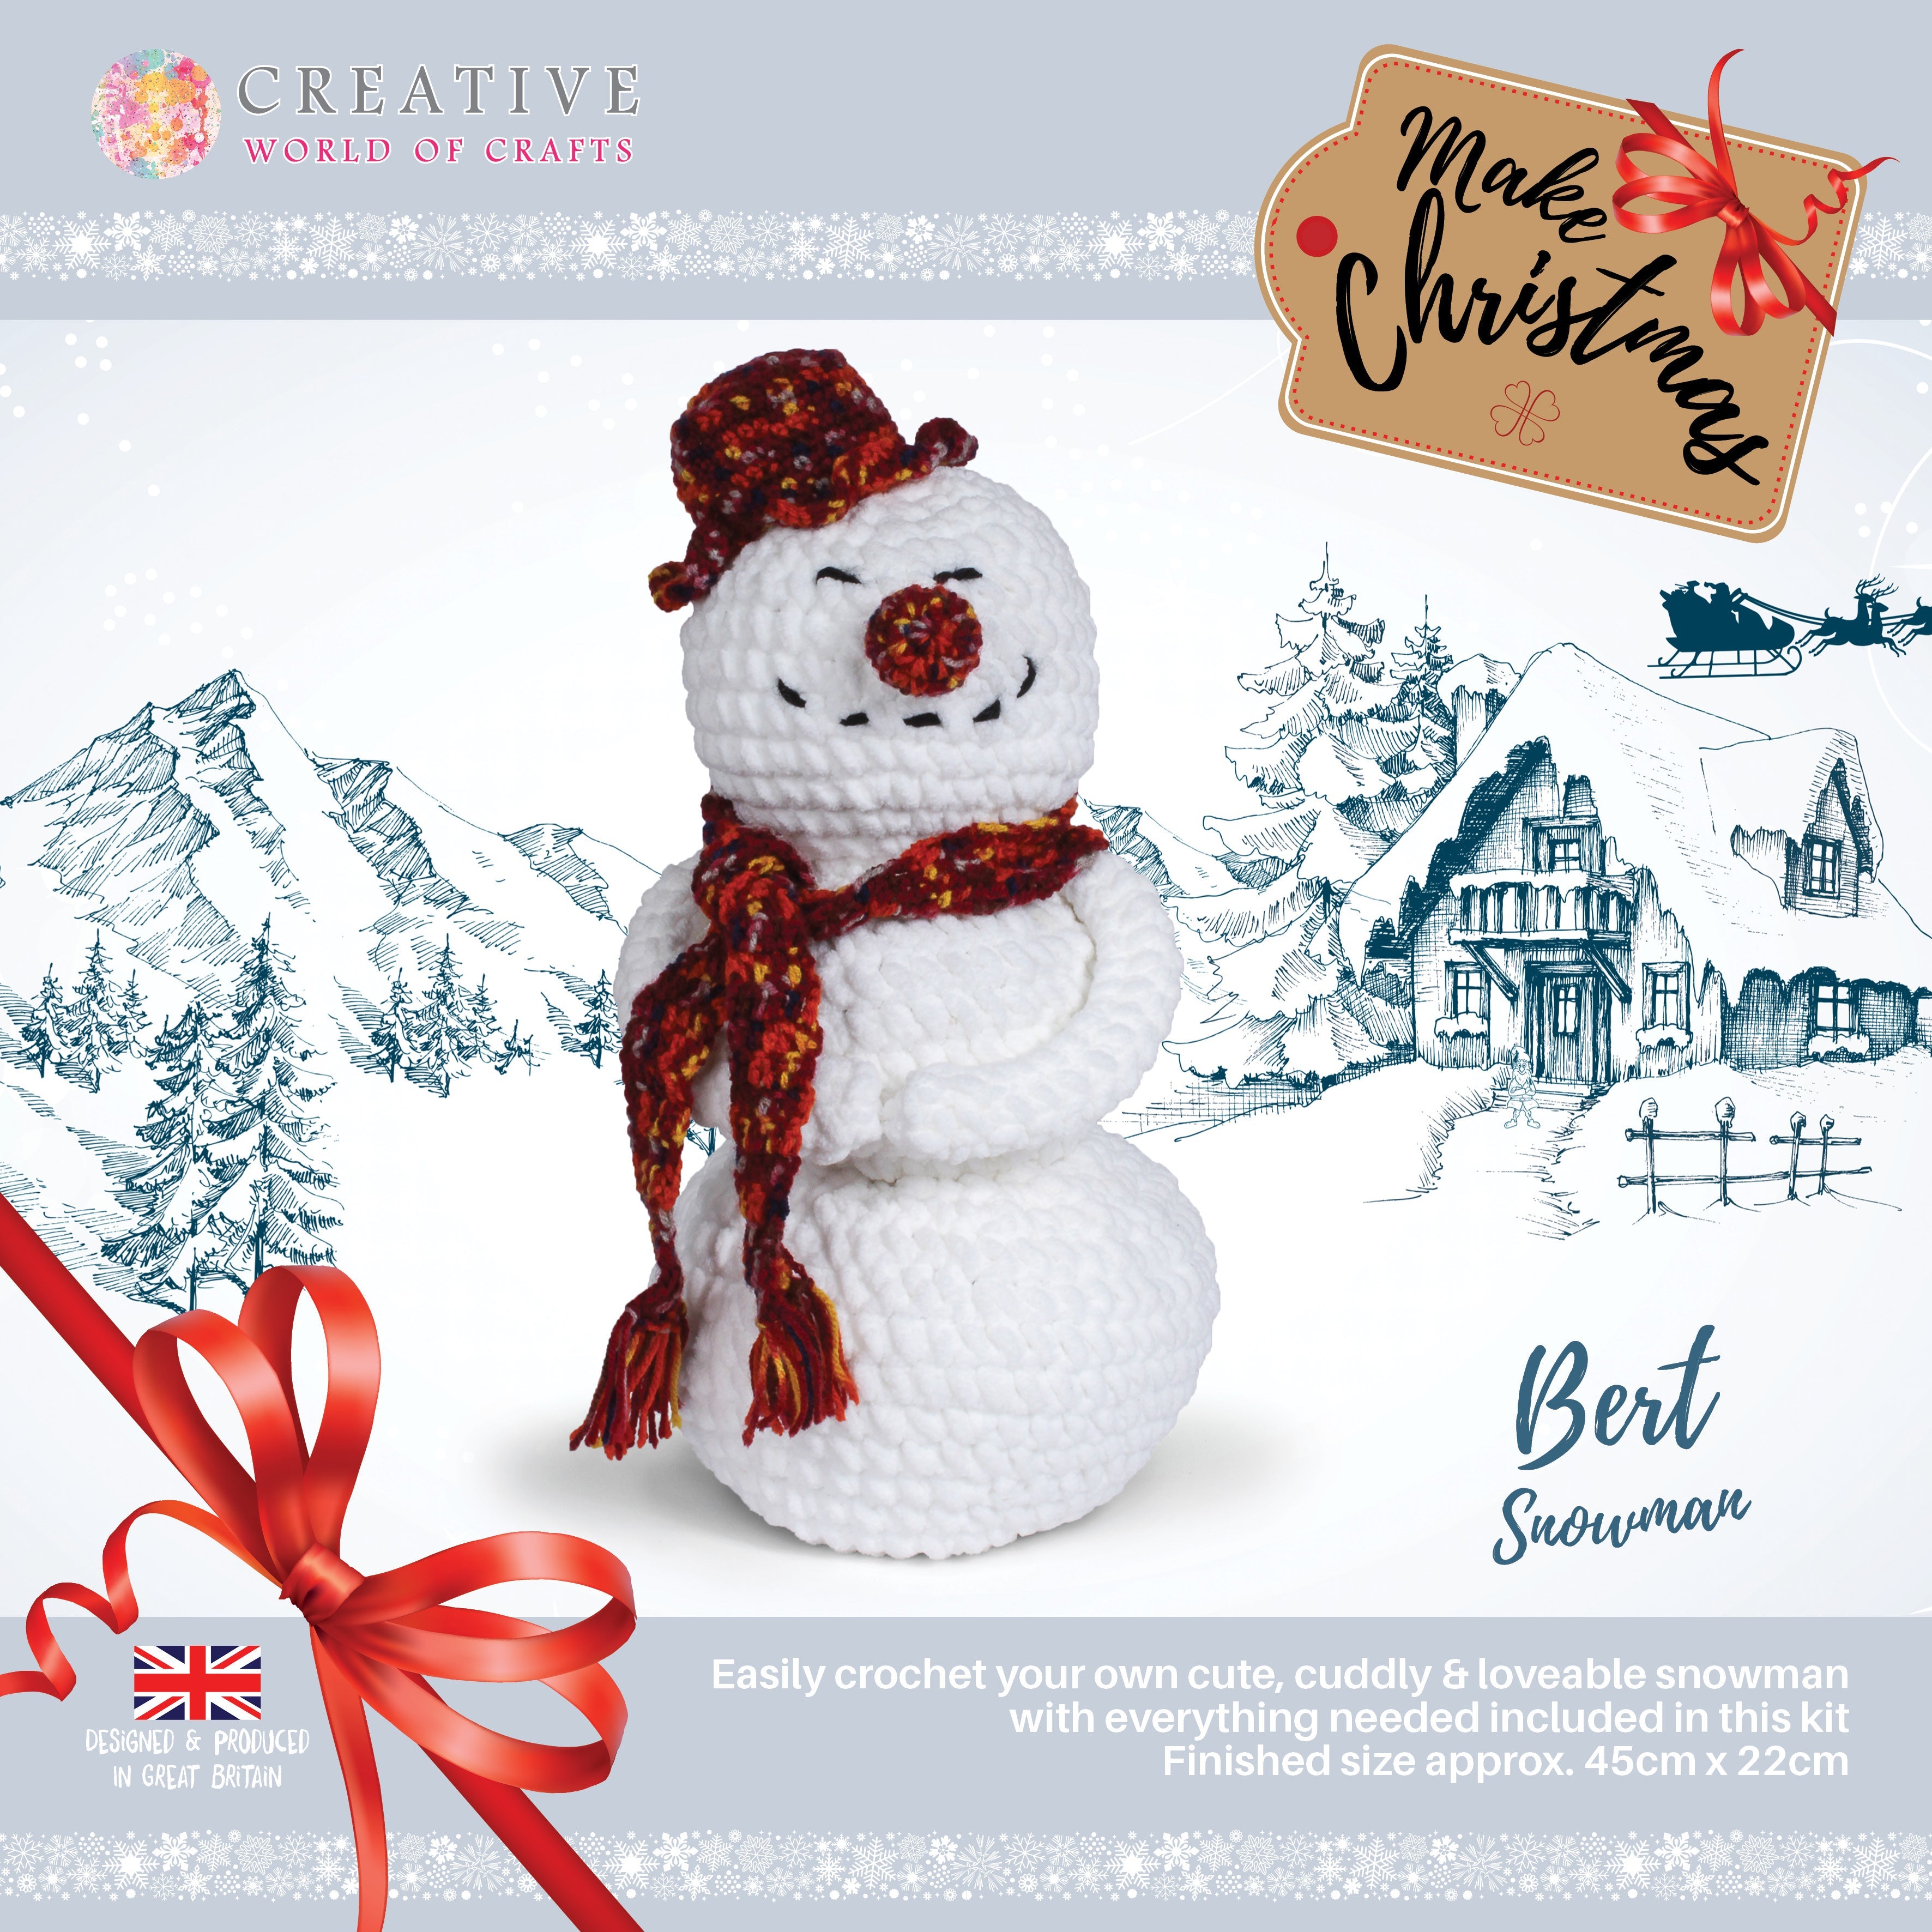 Knitty Critters - Make Christmas - Bert Snowman